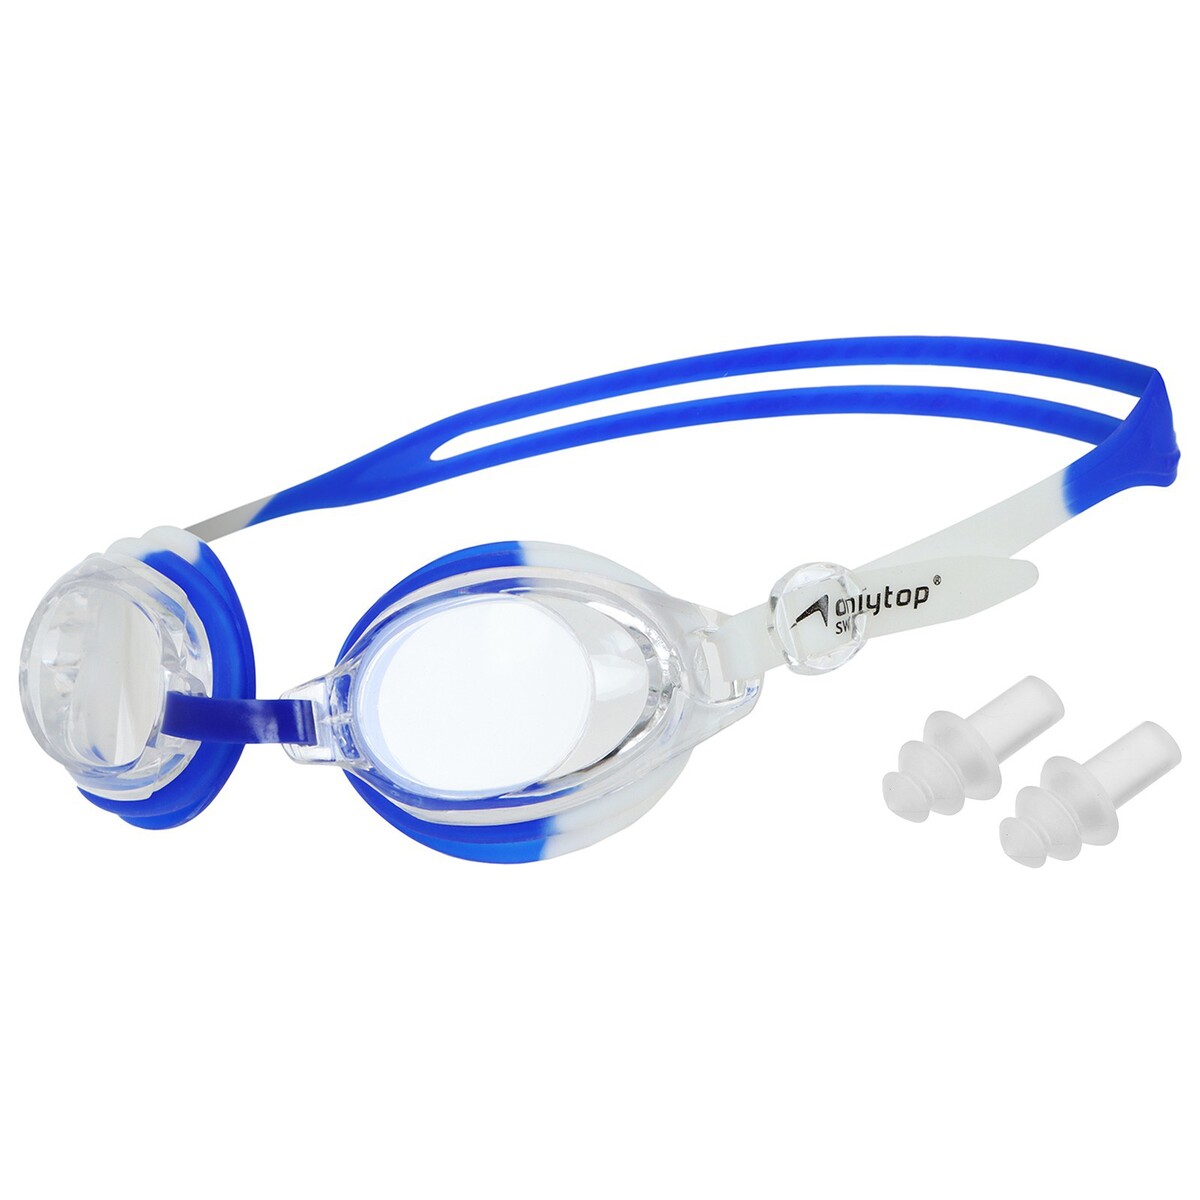 Очки для плавания детские onlytop, беруши, цвет белый/синий очки для плавания speedo futura biofuse flexiseal 8 11313b991